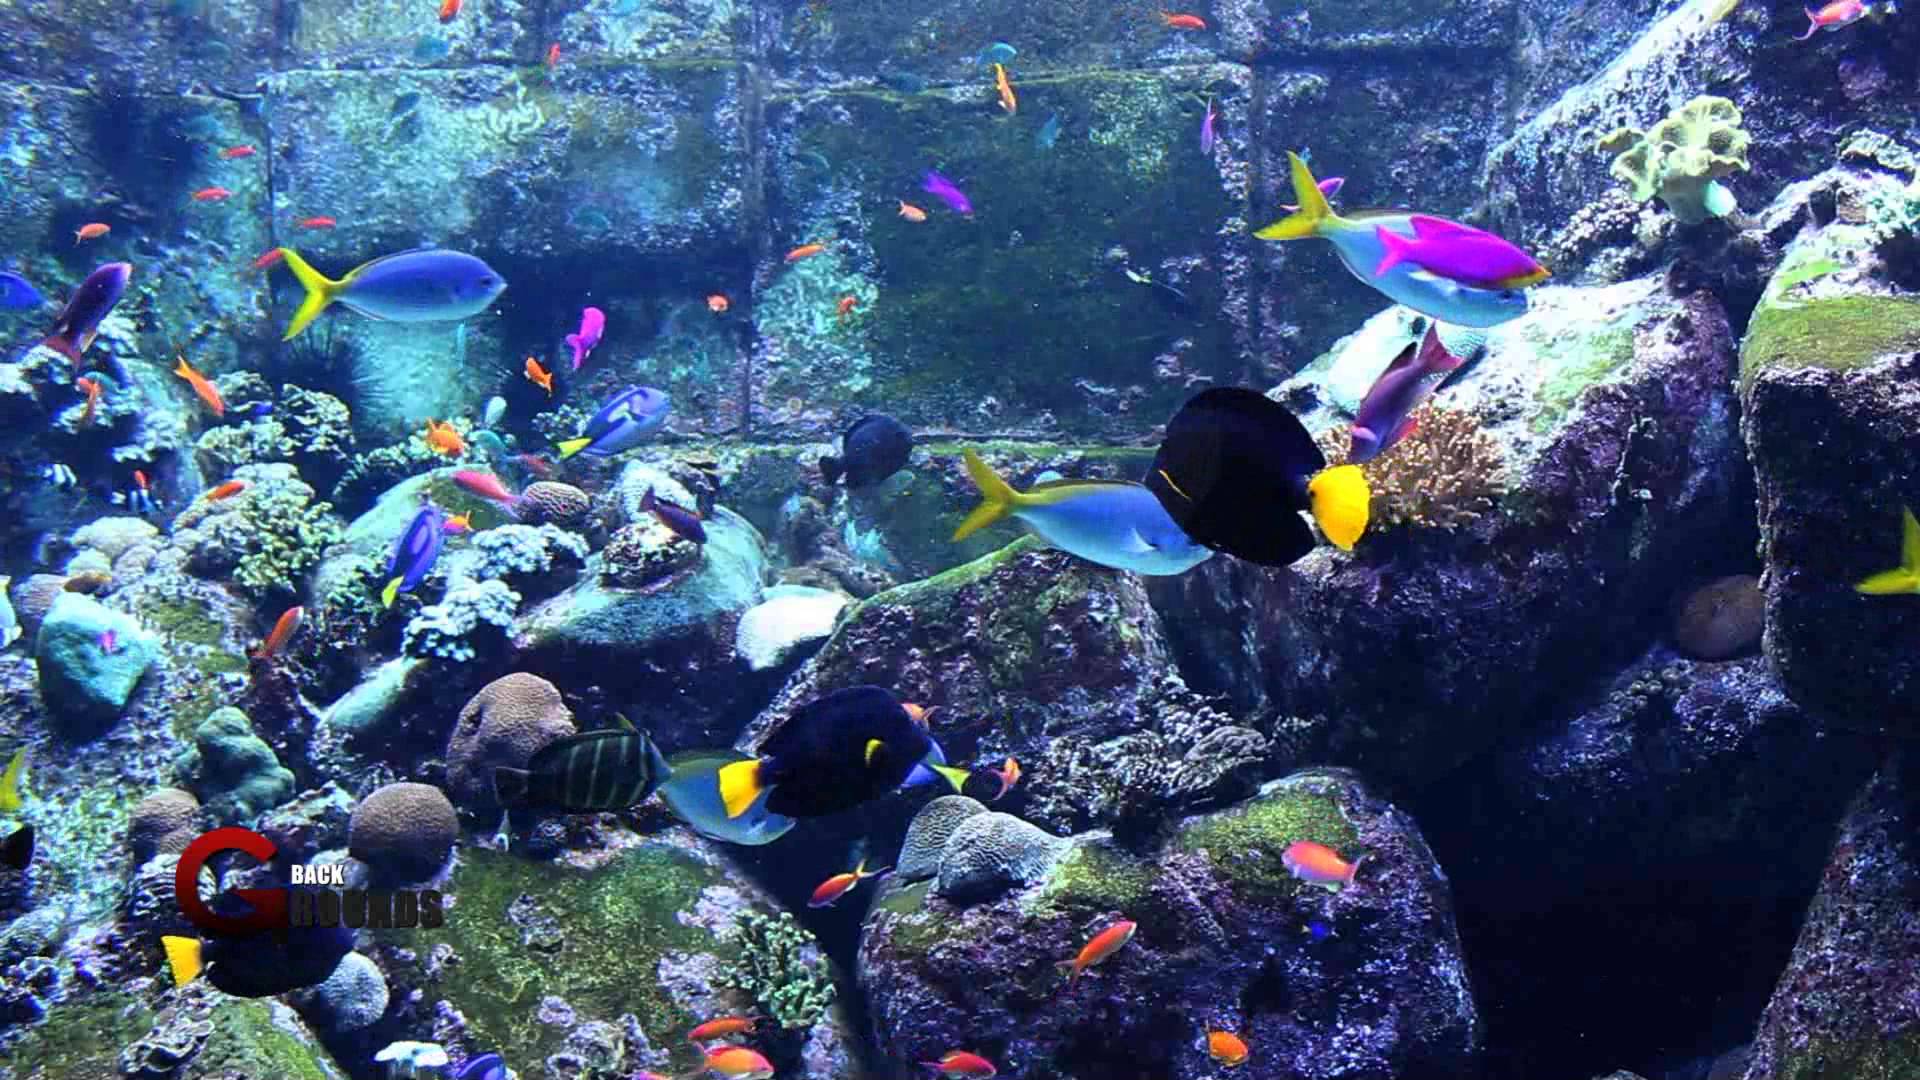 3d hd quality desktop aquarium full screen preactivated updated